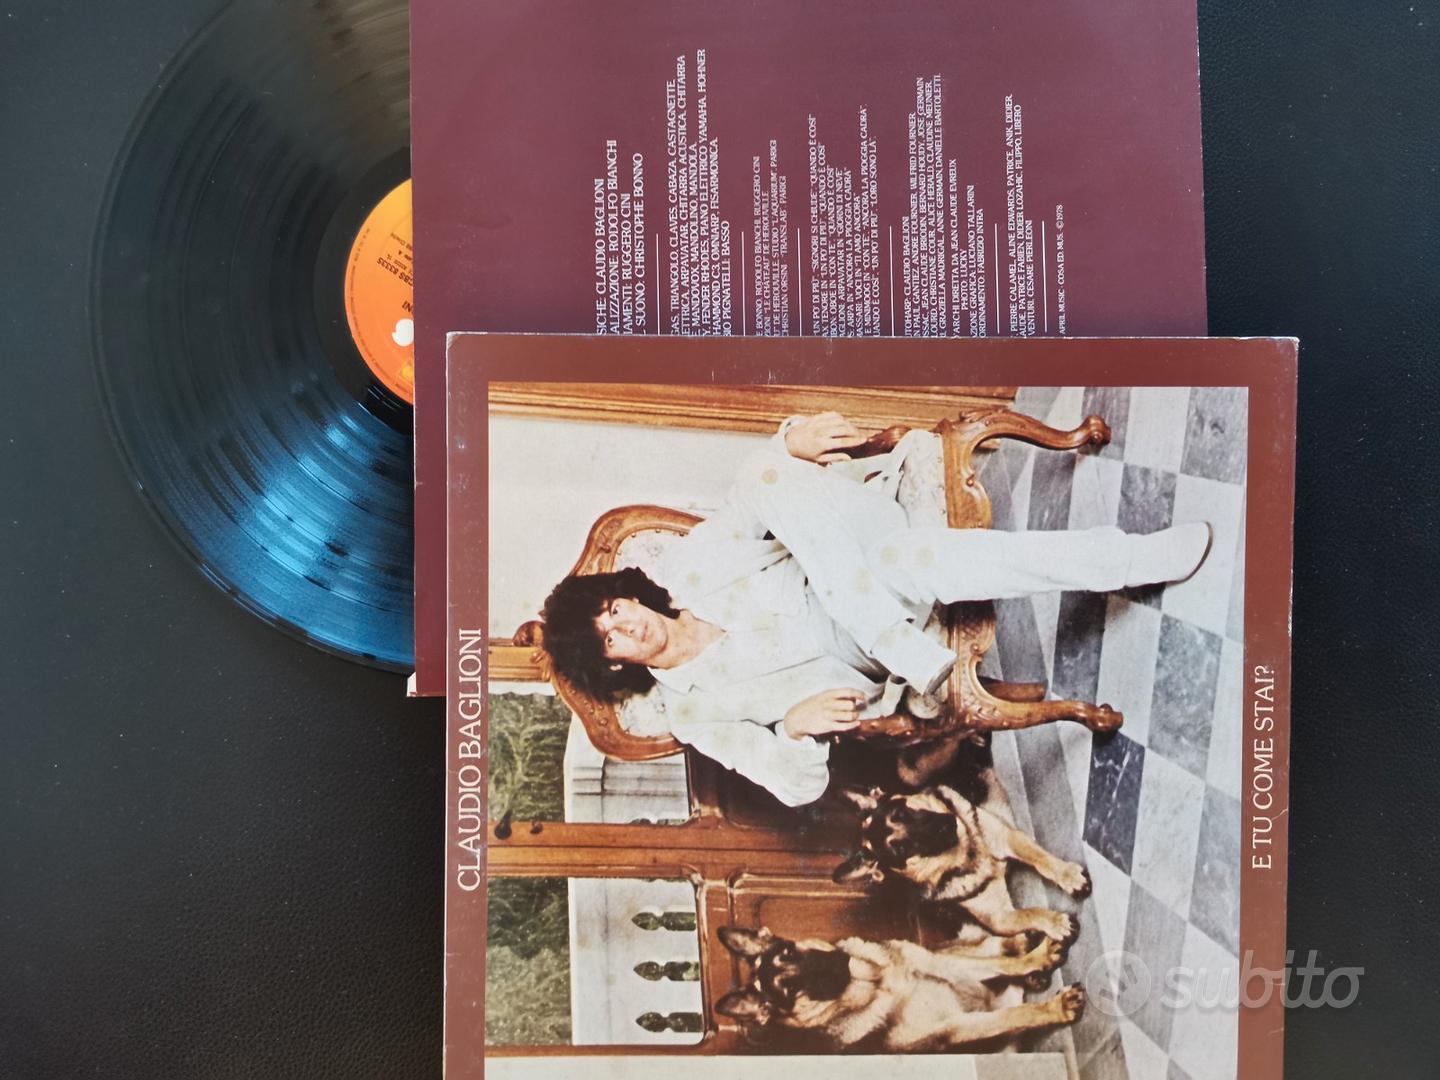 Claudio Baglioni - Solo - disco vinile EP - LP 33 - Audio/Video In vendita  a Milano